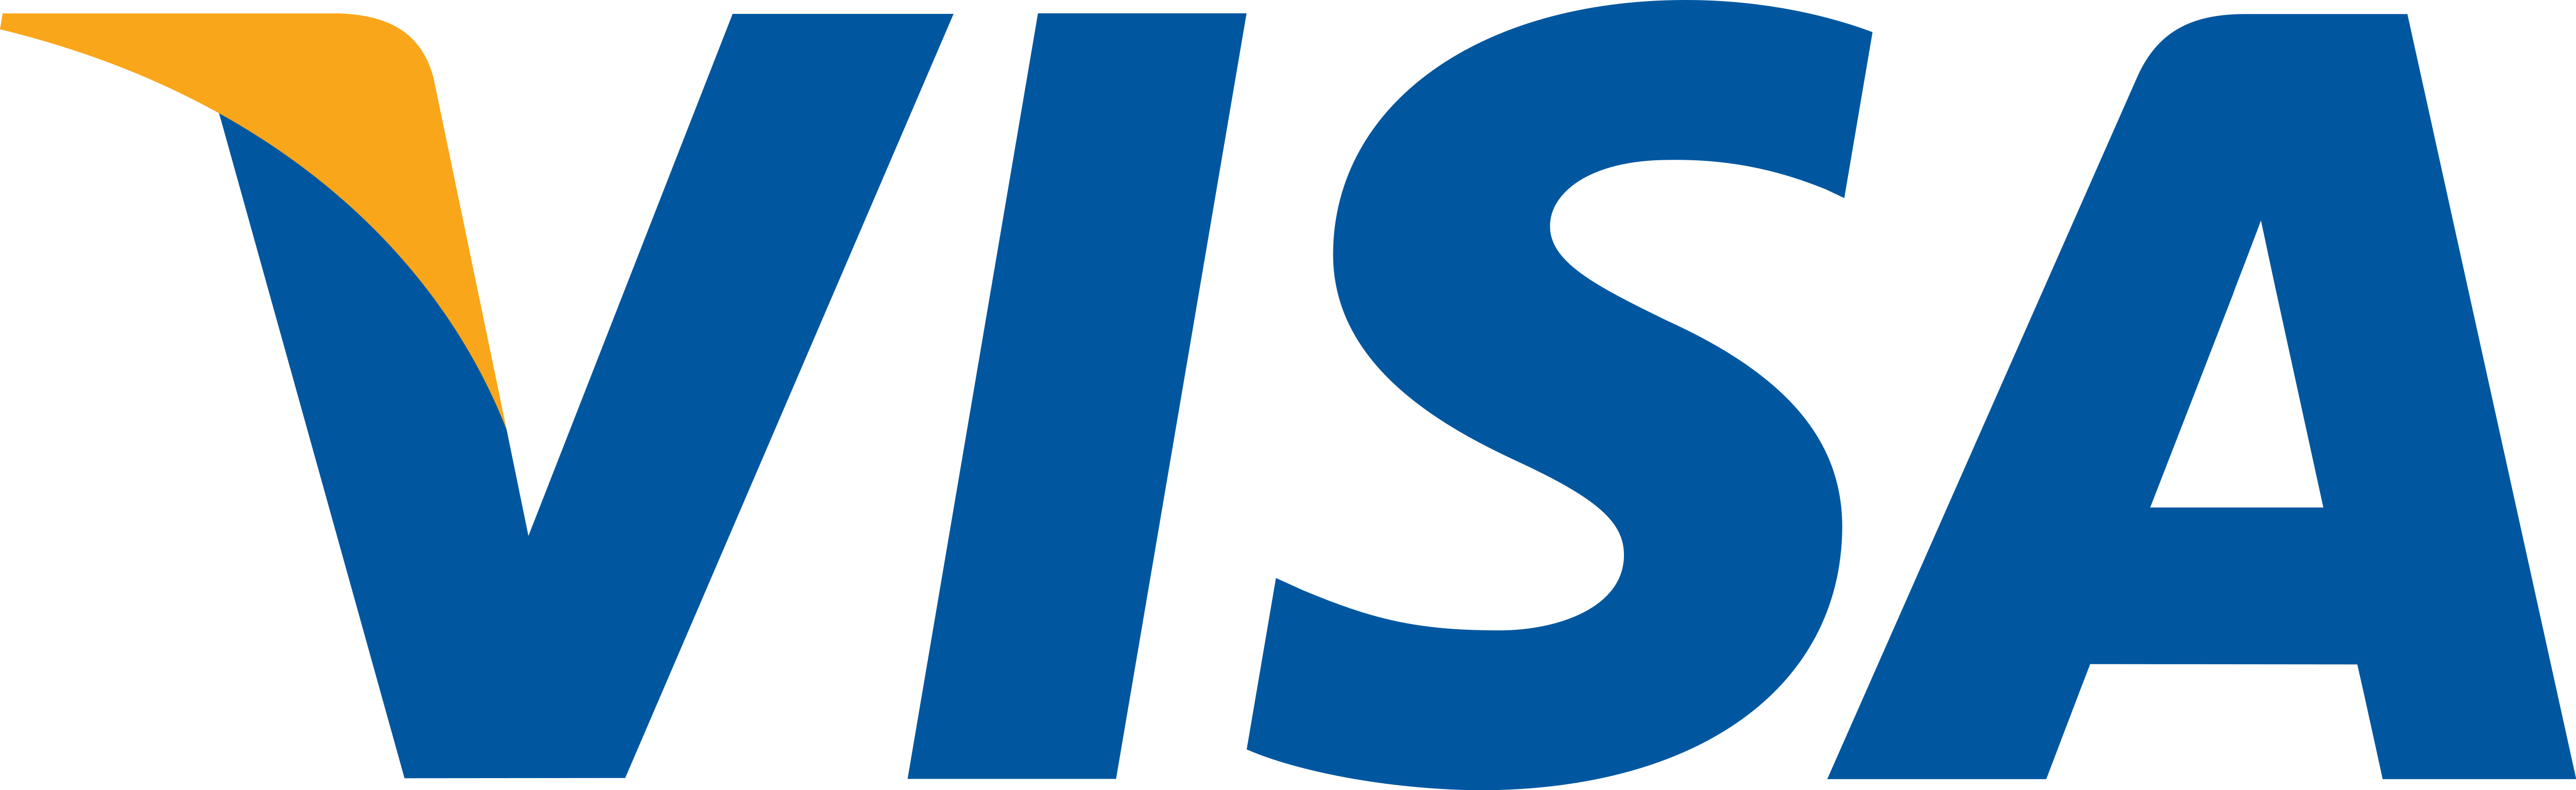 Visa Card Logo Transparent Images PNG